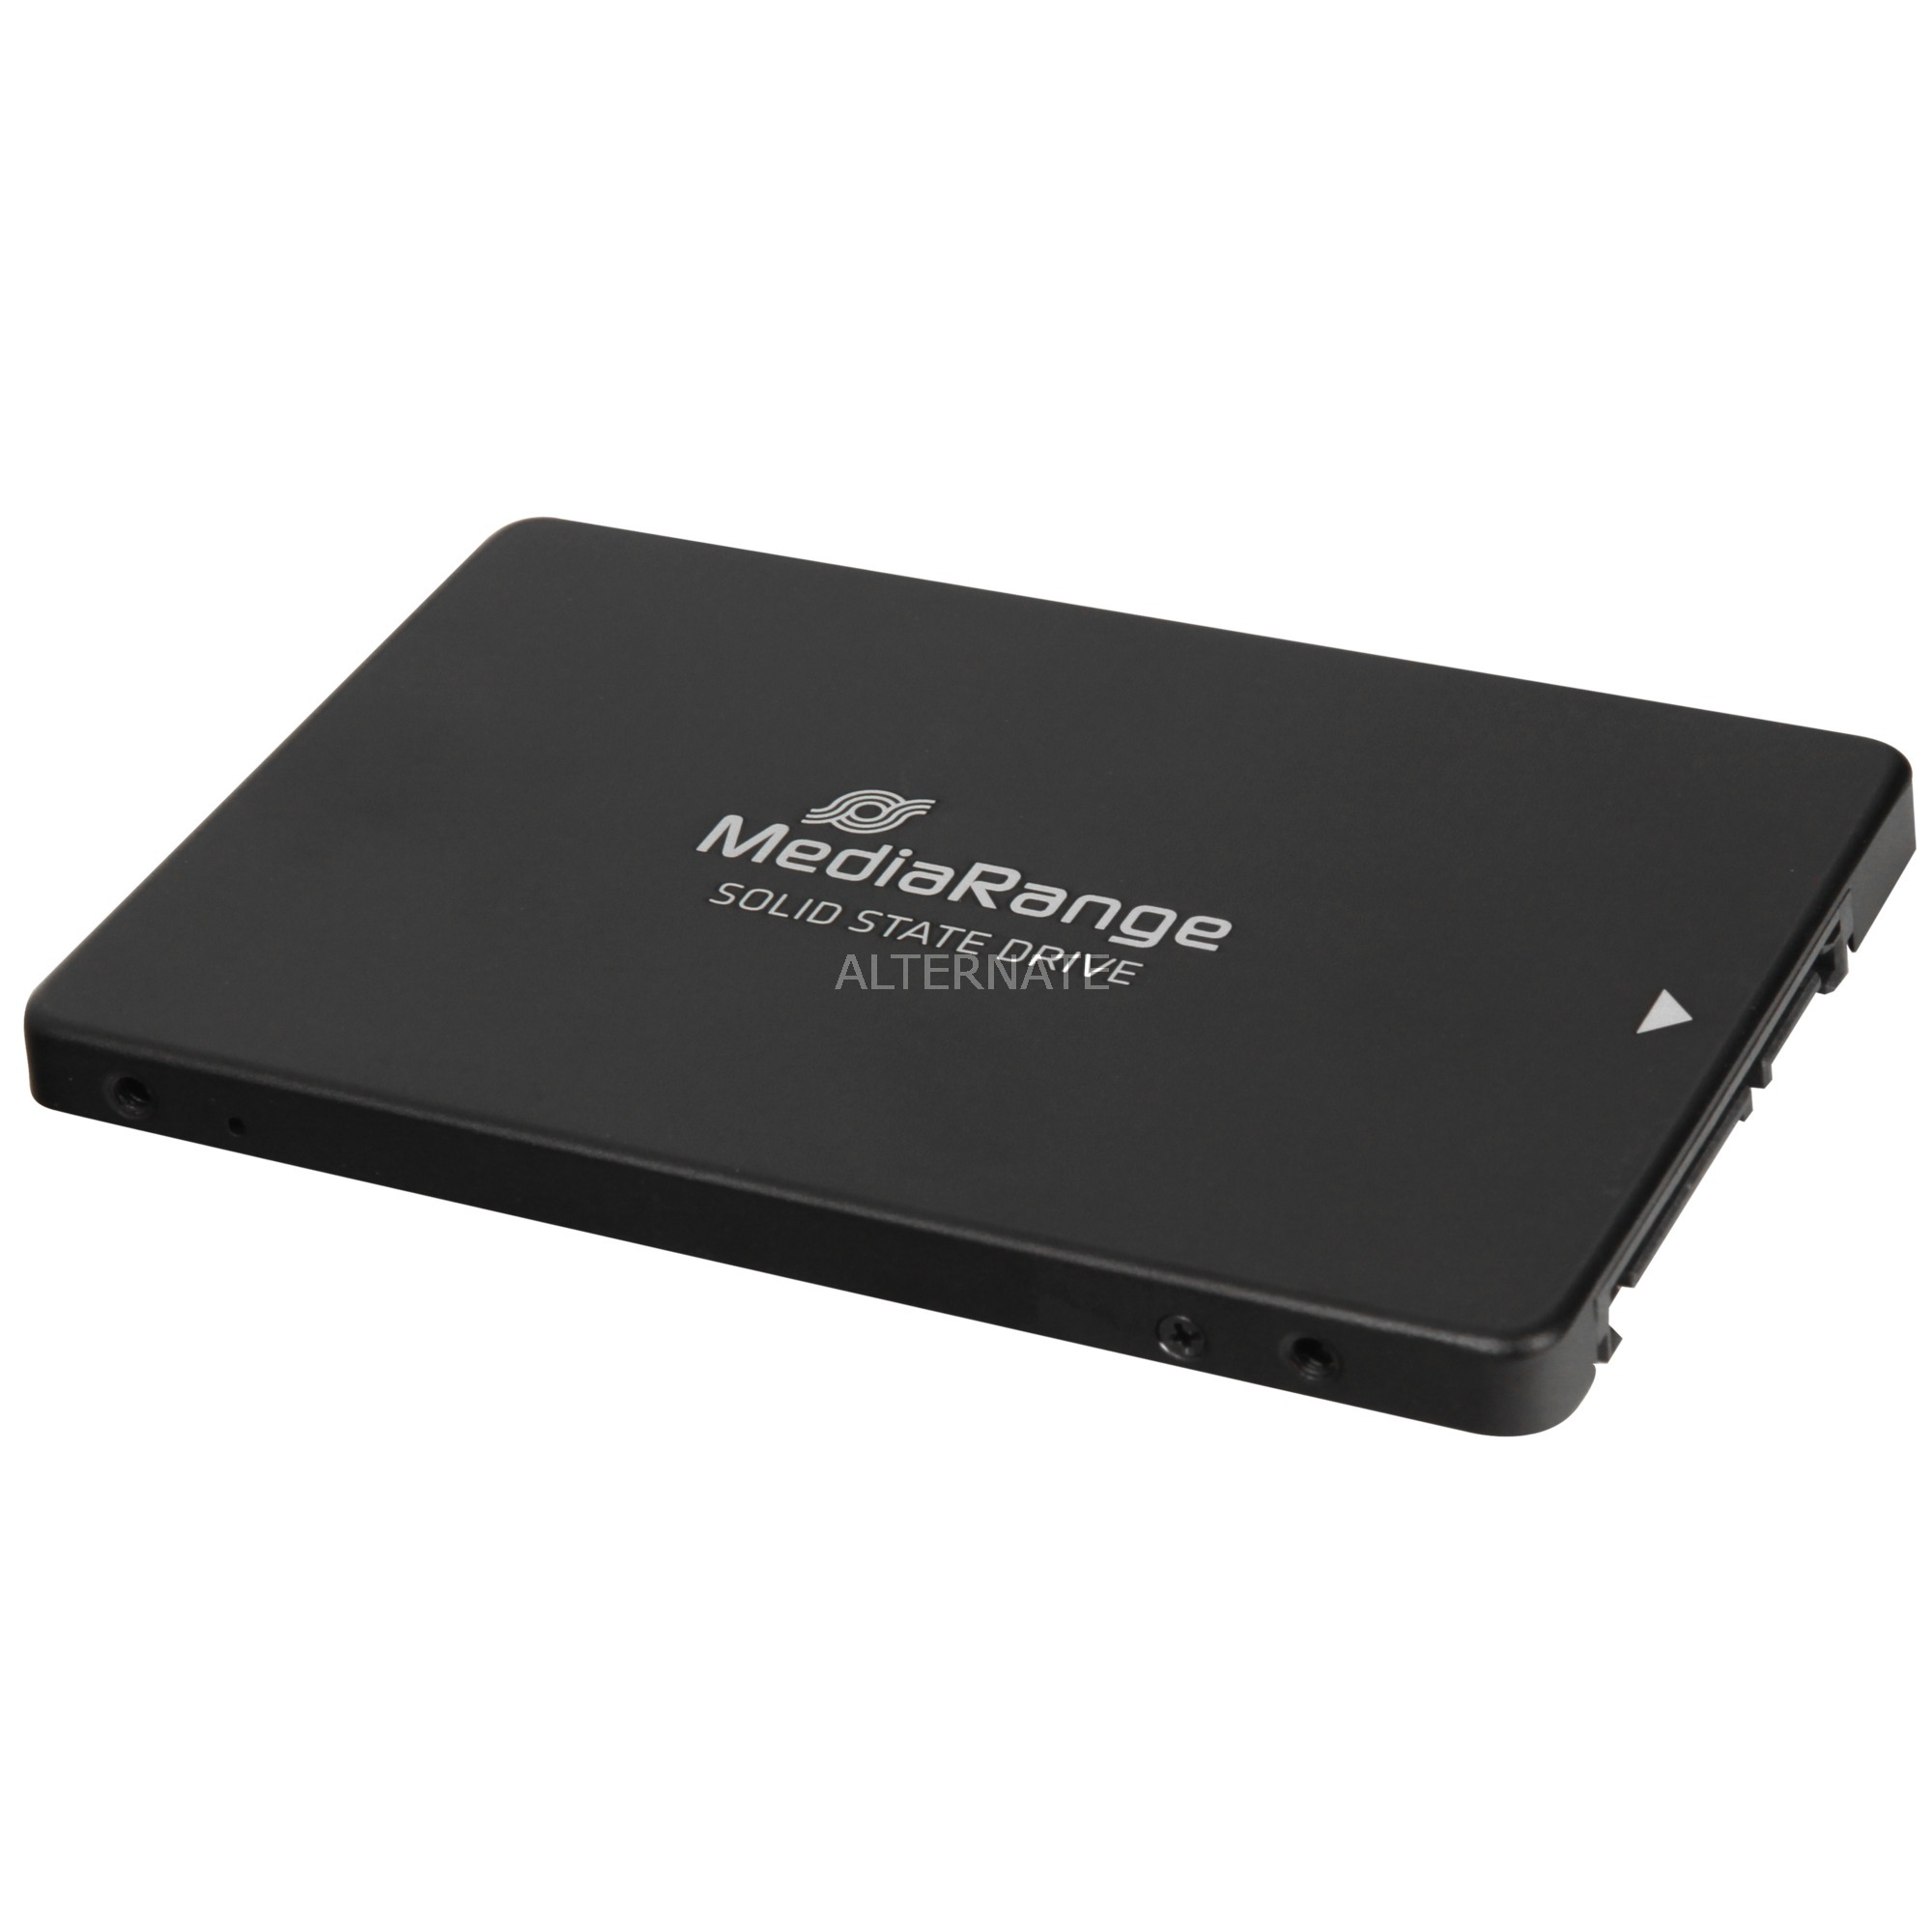 MR1002 urządzenie SSD 240 GB druga generacja szeregowej magistrali komputerowej (serial ATA II), Serial ATA III 2.5", Dysk SSD